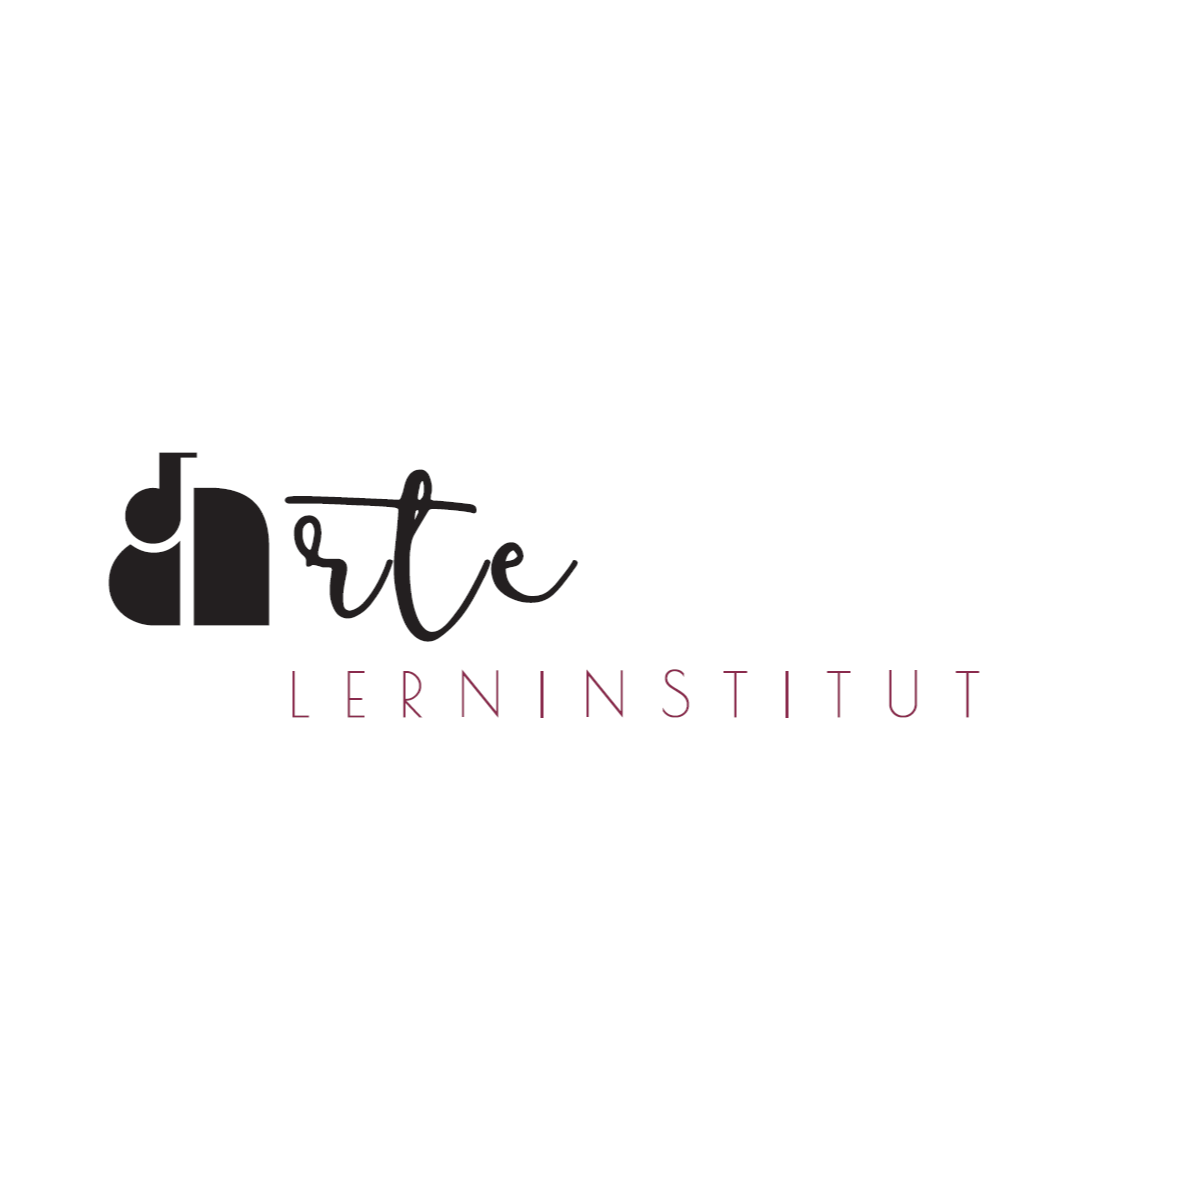 Lerninstitut Arte GmbH